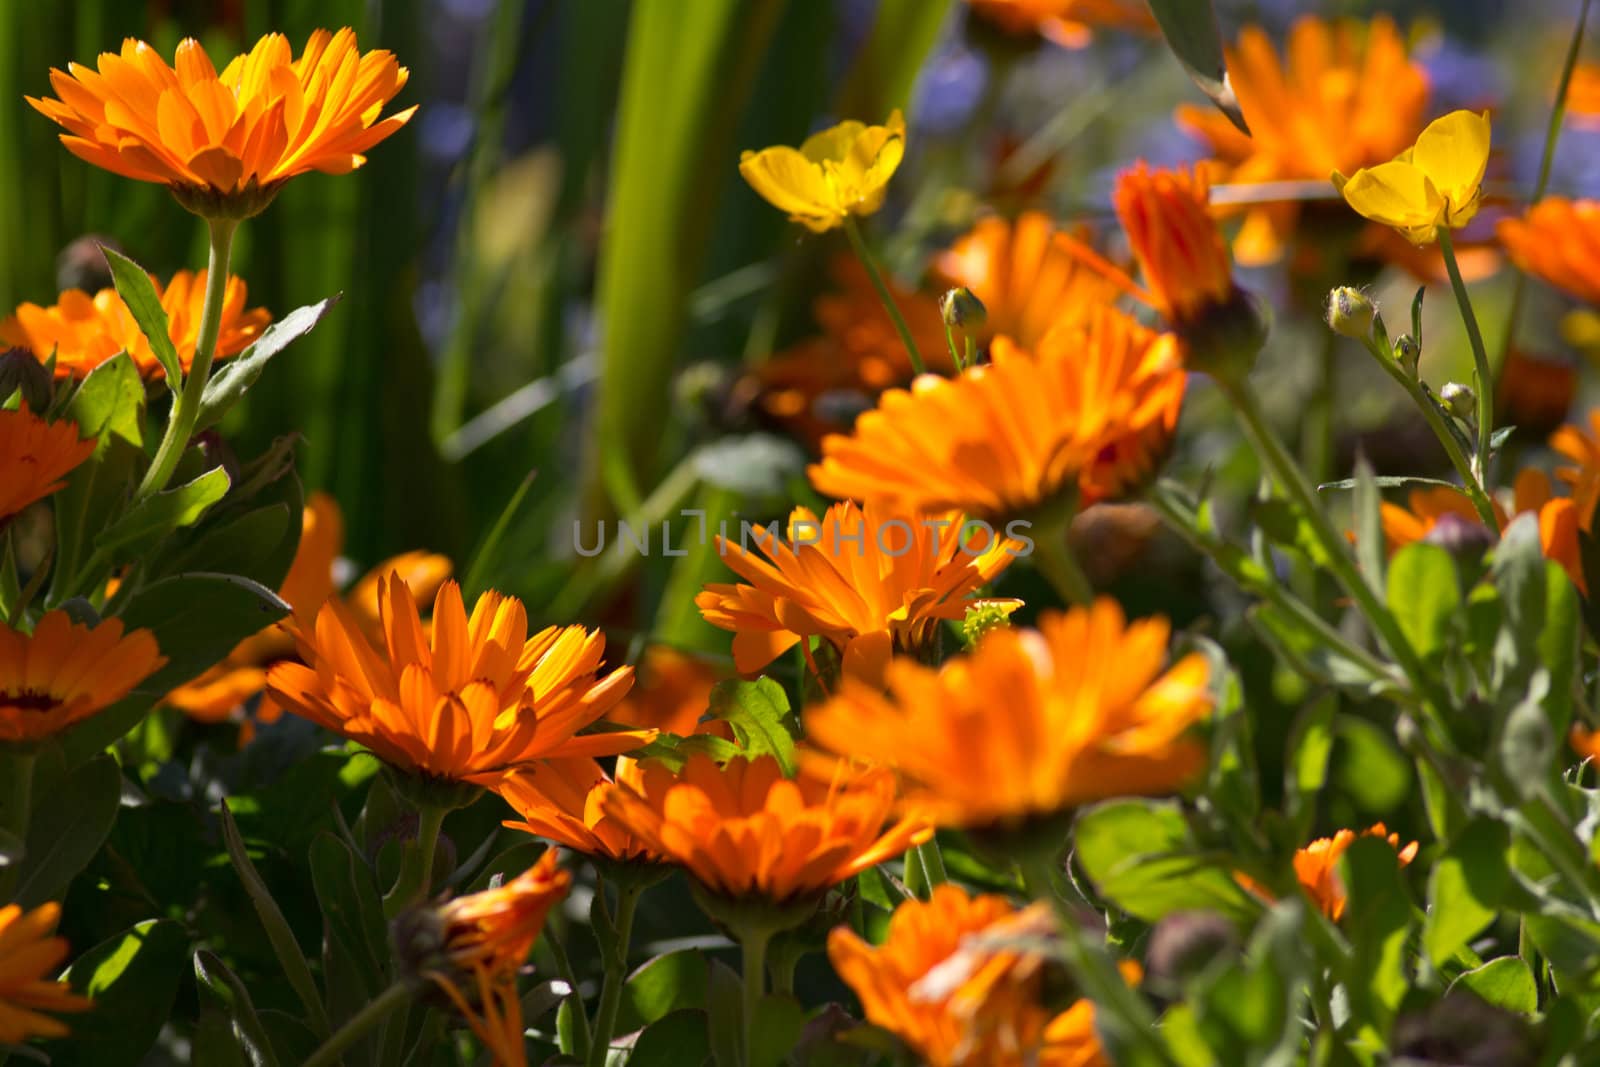 A garden of orange Marigolds